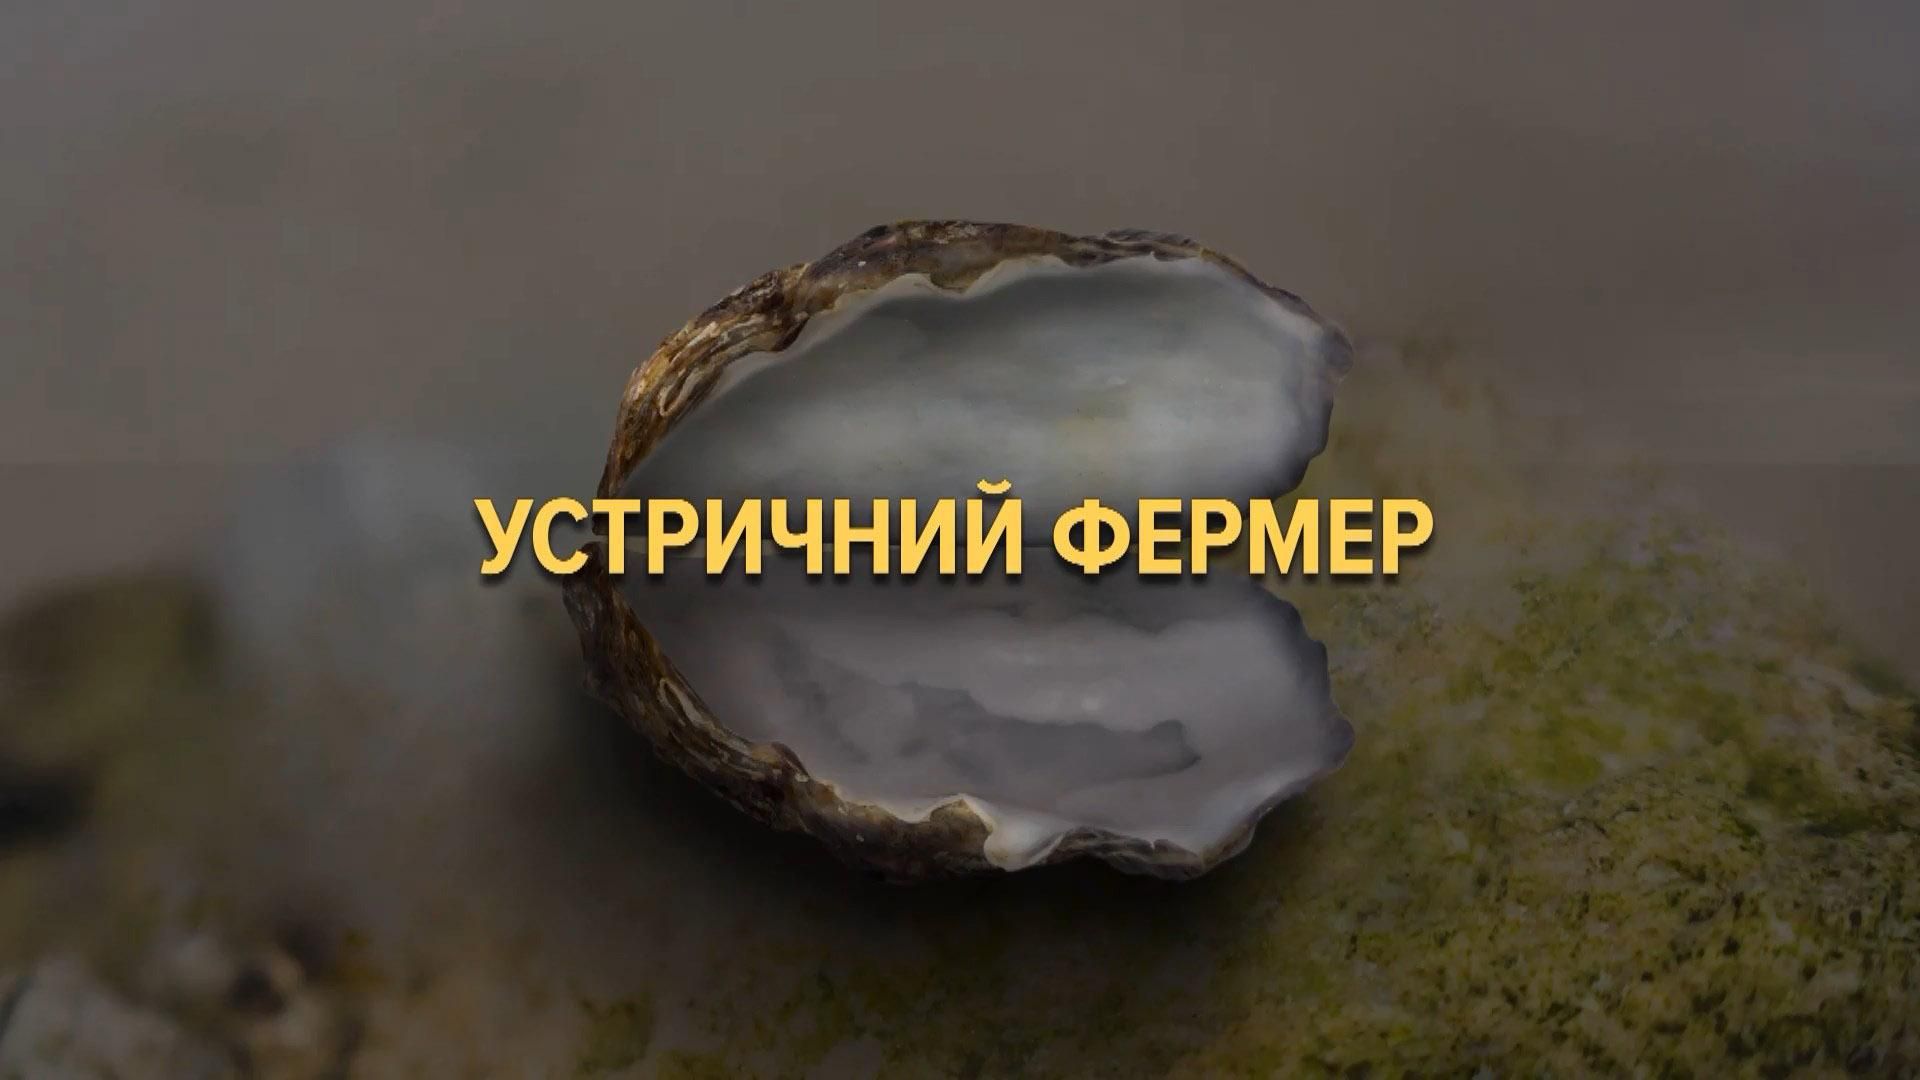 Російські вчені заборонили фермеру вирощувати молюсків через "небезпеку обороноздатності РФ"